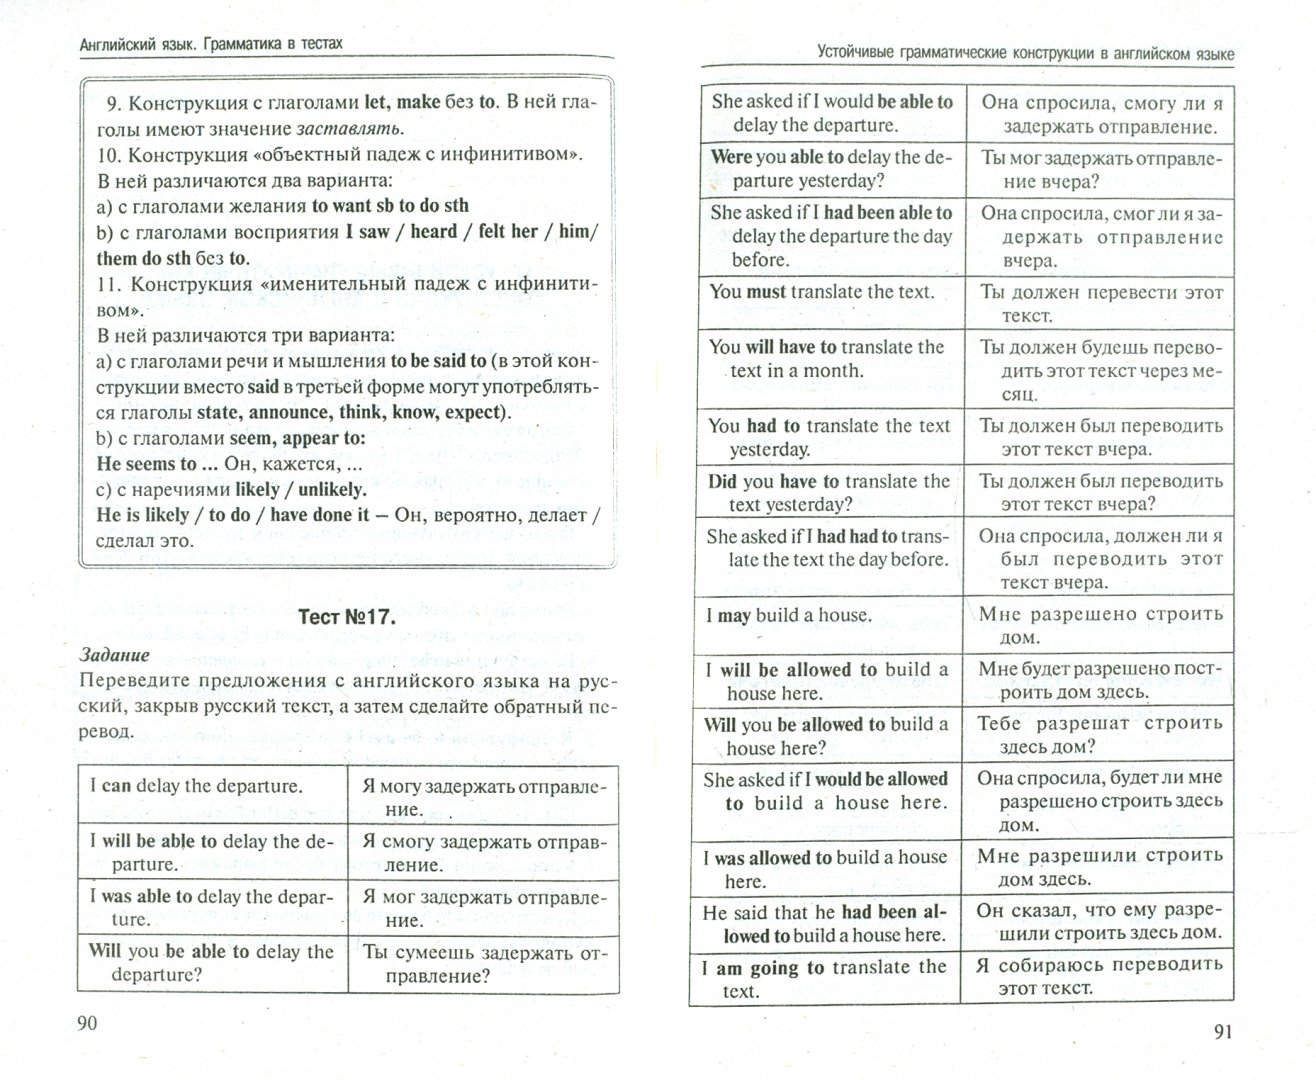 Иллюстрация 1 из 8 для Английский язык. Грамматика в тестах - Павел Литвинов | Лабиринт - книги. Источник: Лабиринт